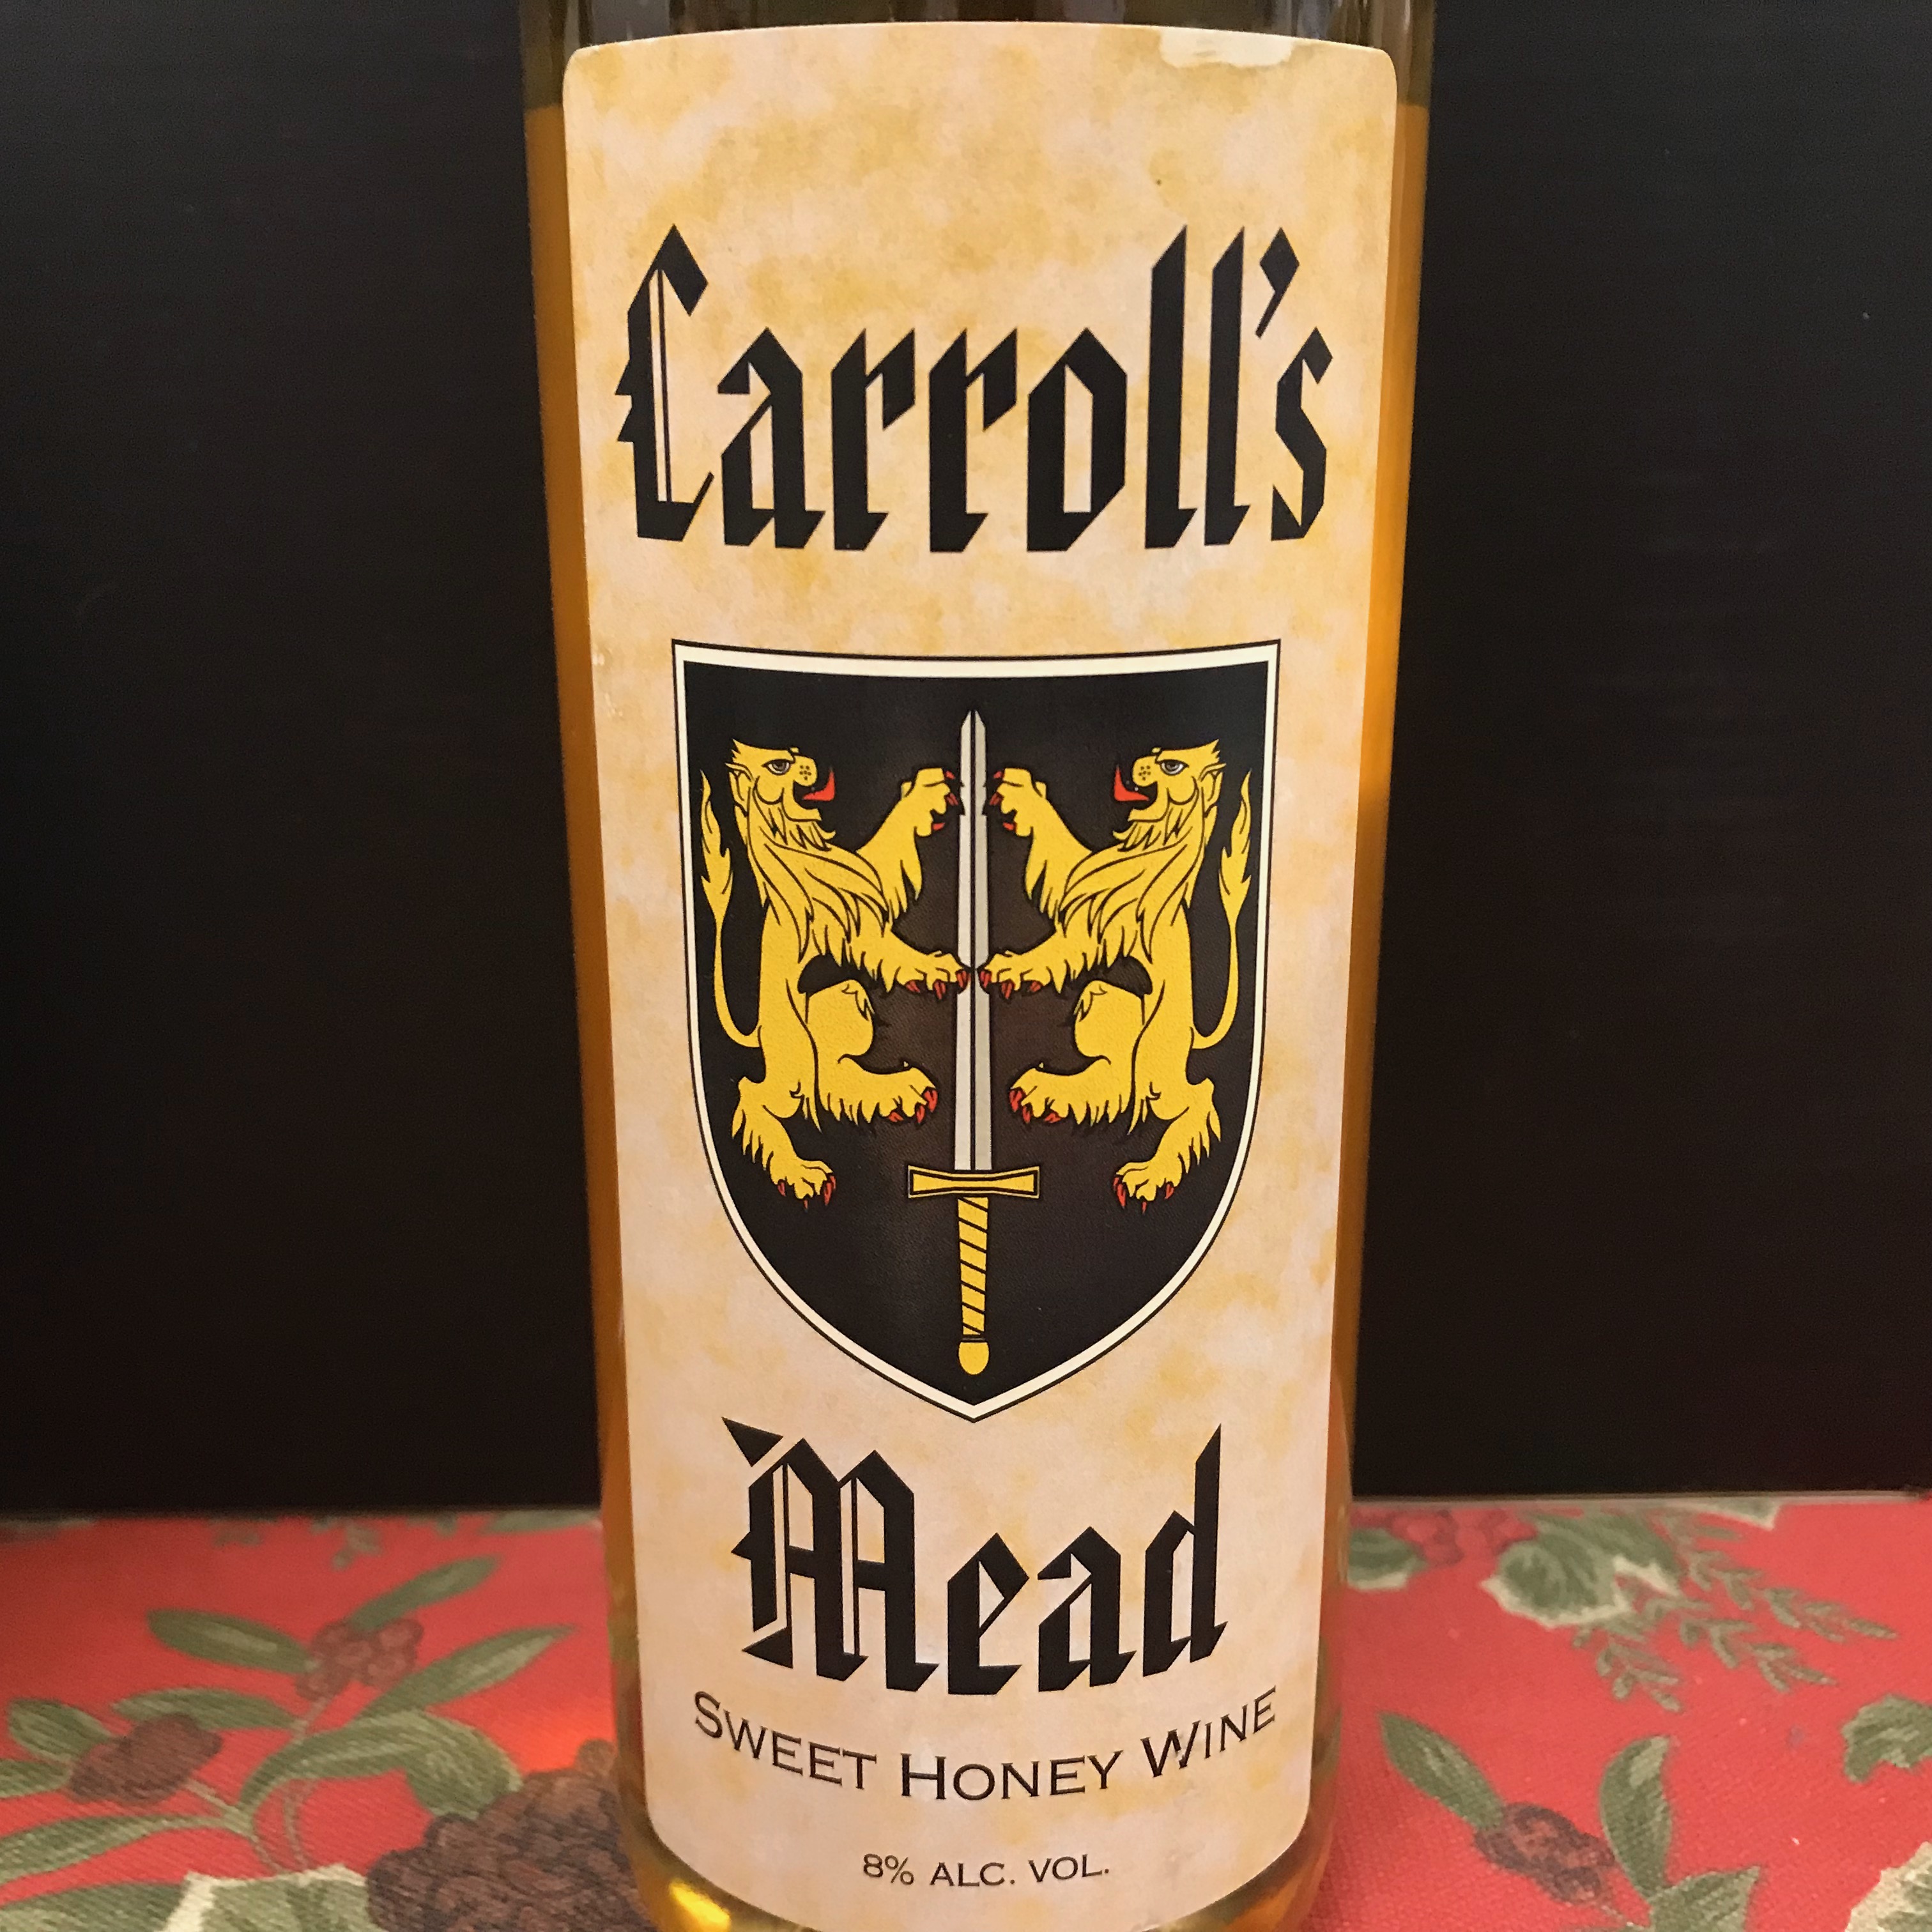 Carrol's Mead Sweet Honey Wine